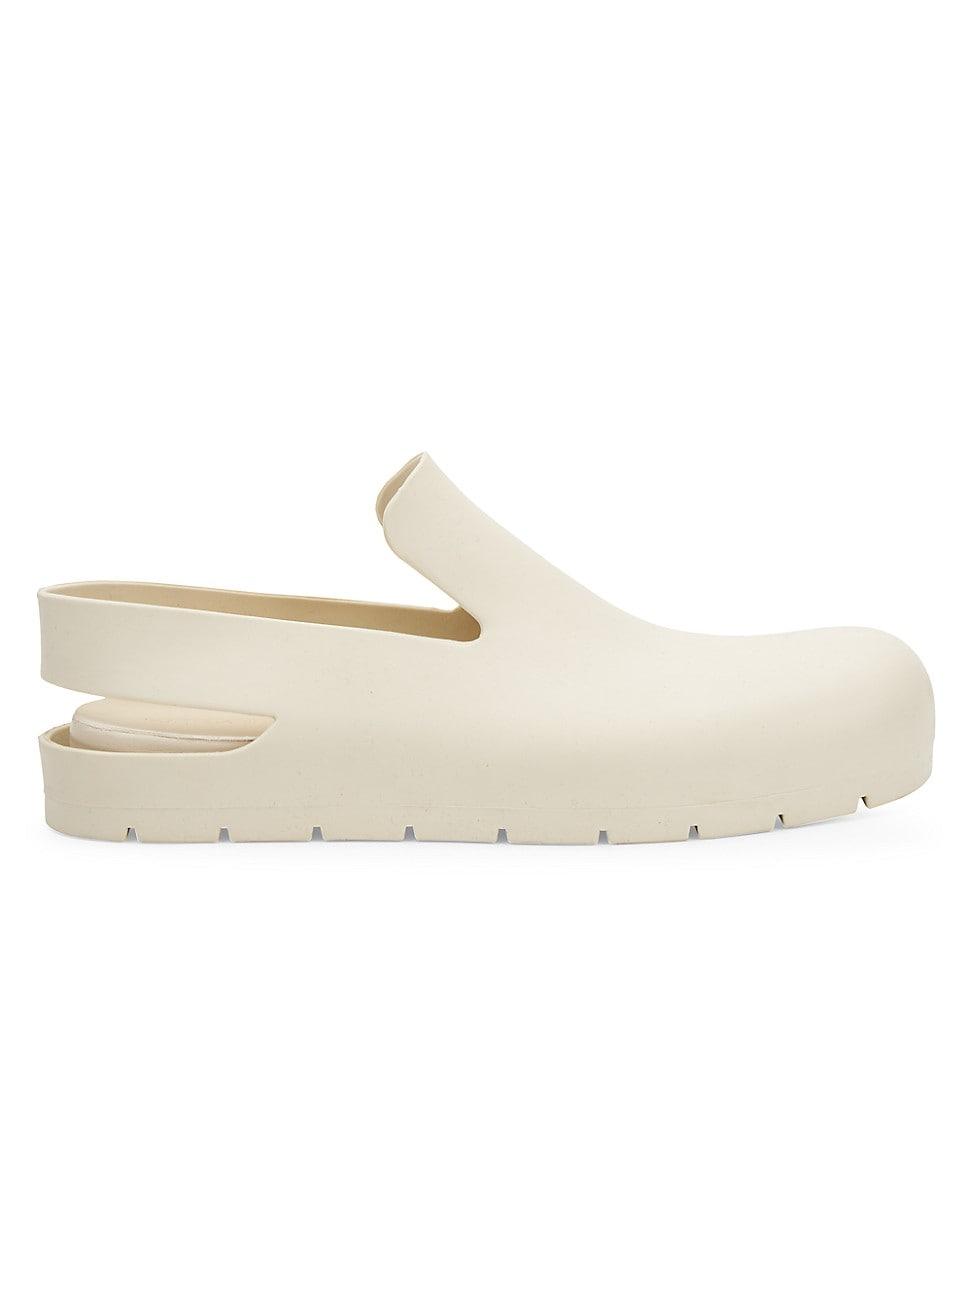 Bottega Veneta Rubber Puddle Sandals In White For Men Lyst